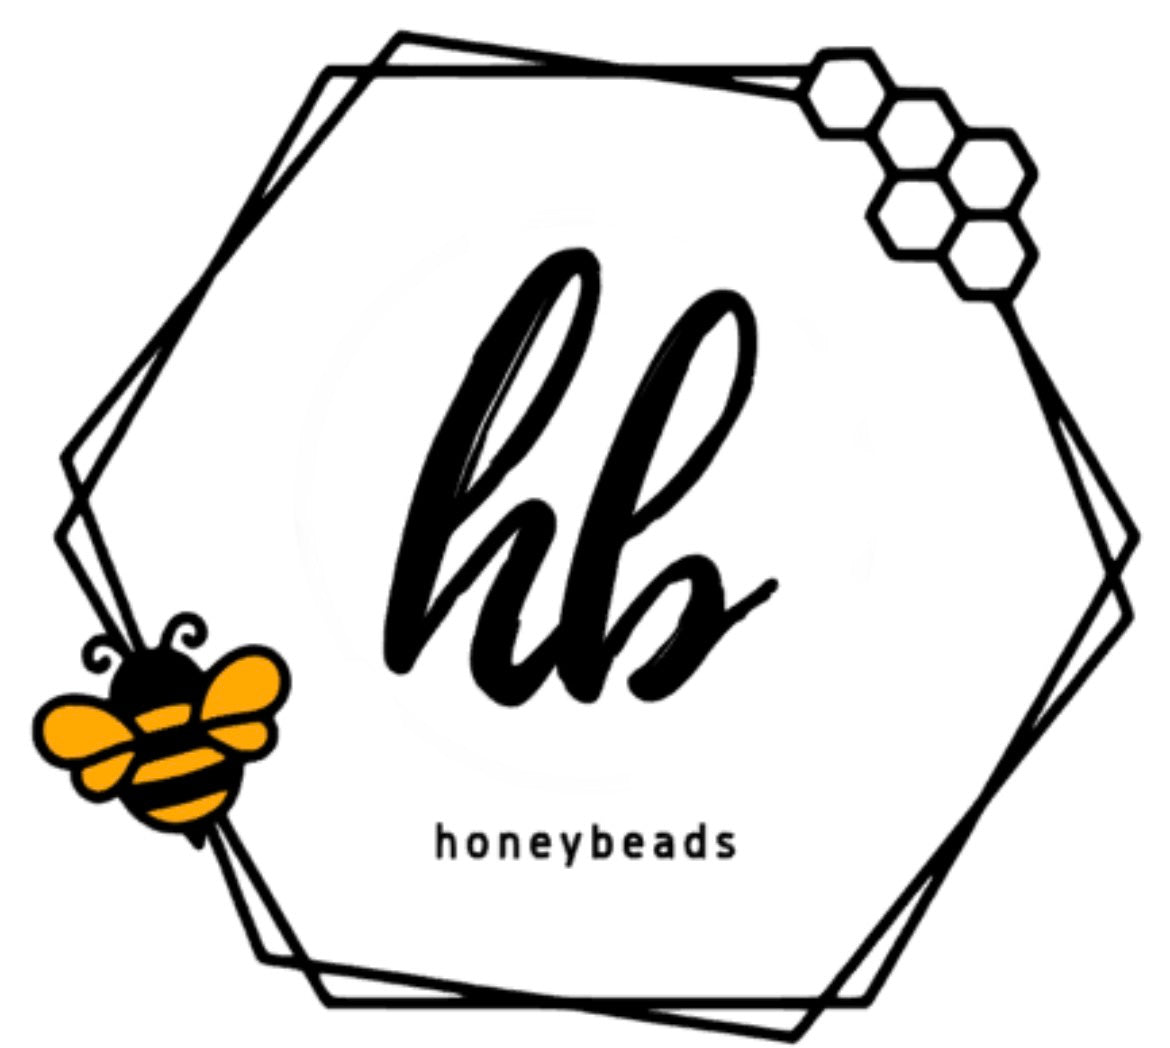 Honeybeads